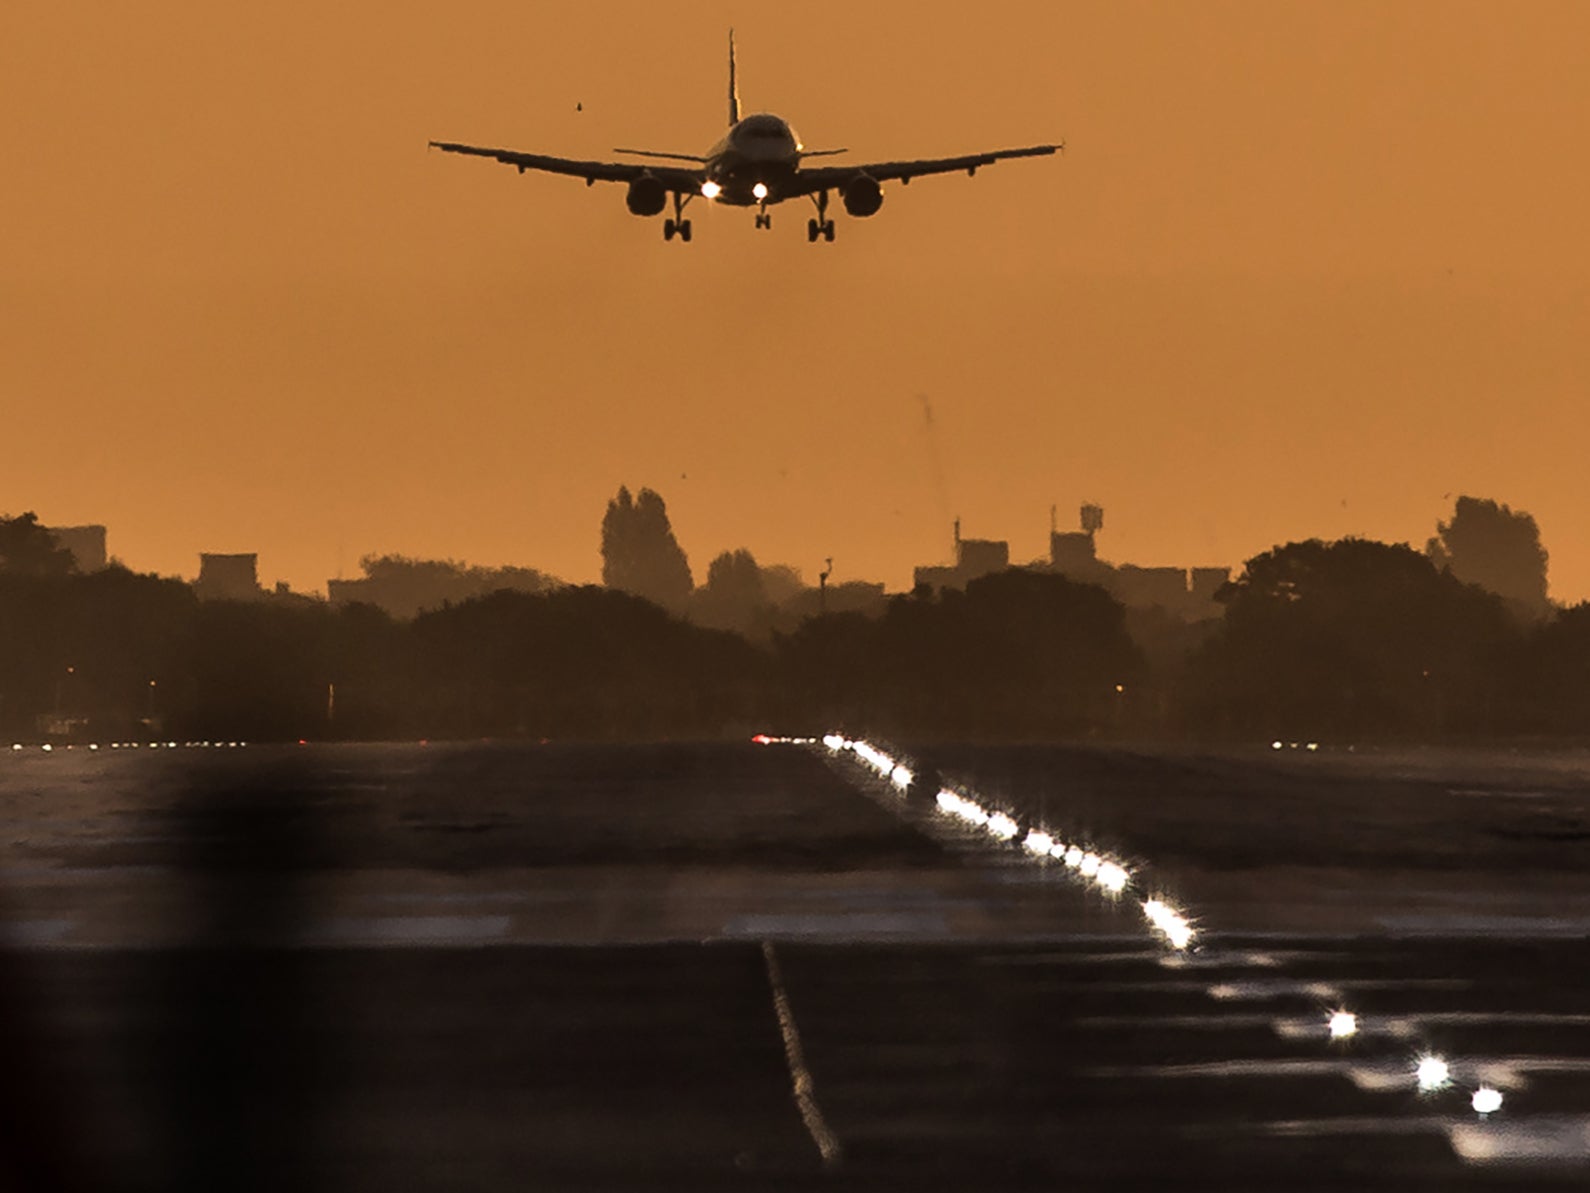 Î‘Ï€Î¿Ï„Î­Î»ÎµÏƒÎ¼Î± ÎµÎ¹ÎºÏŒÎ½Î±Ï‚ Î³Î¹Î± Heathrow Airport, record first quarter